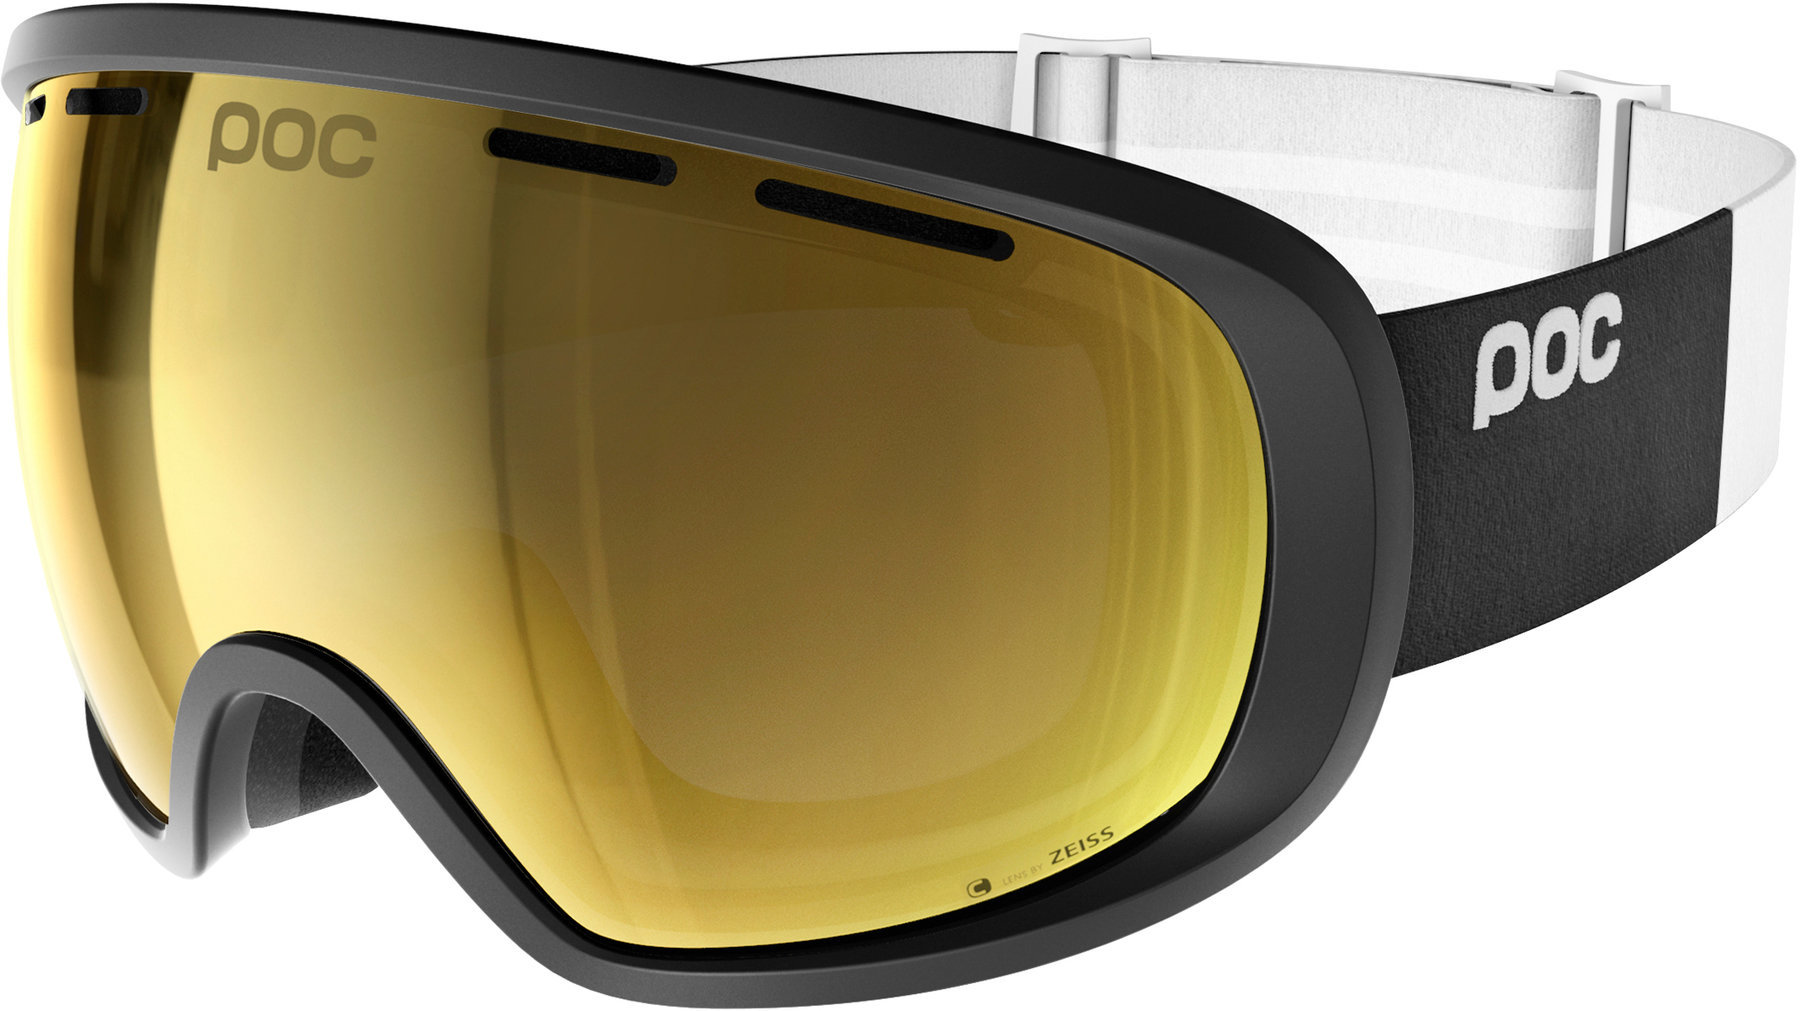 Occhiali da sci POC Fovea Clarity Occhiali da sci